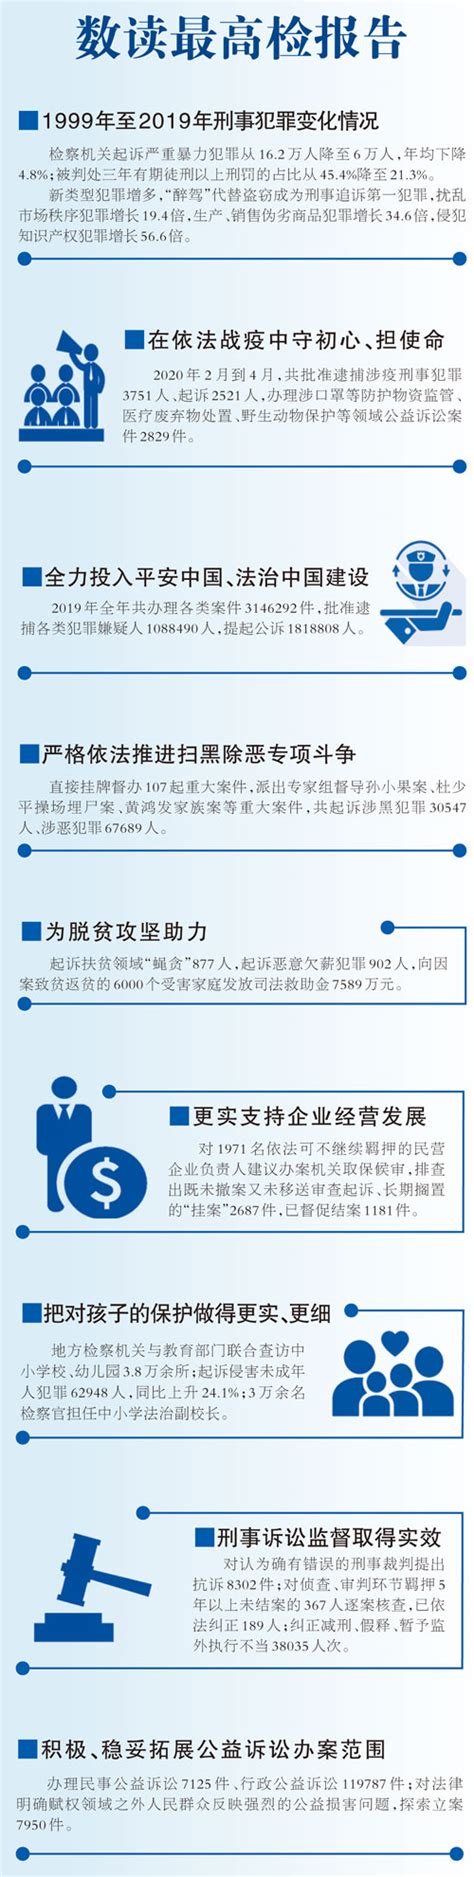 不断增强人民群众获得感、幸福感、安全感 ——“两高”工作报告解读 - 中国船东协会